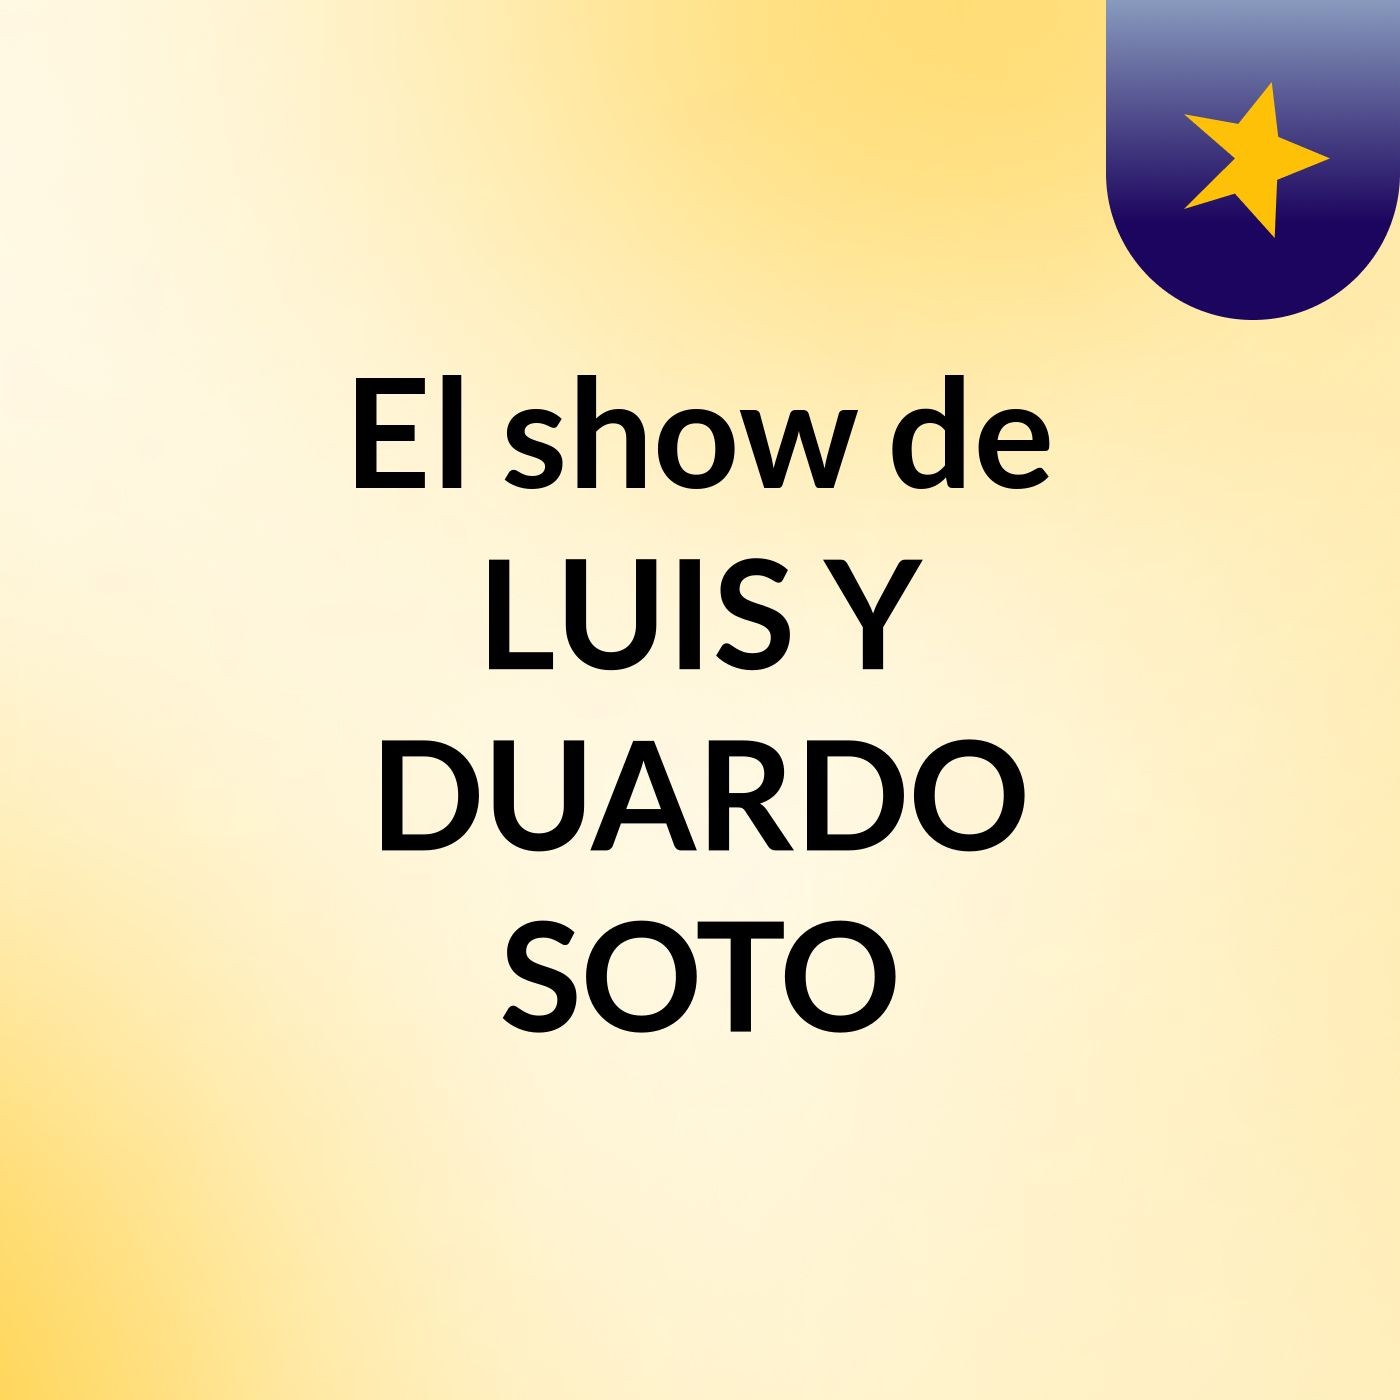 El show de LUIS Y DUARDO SOTO